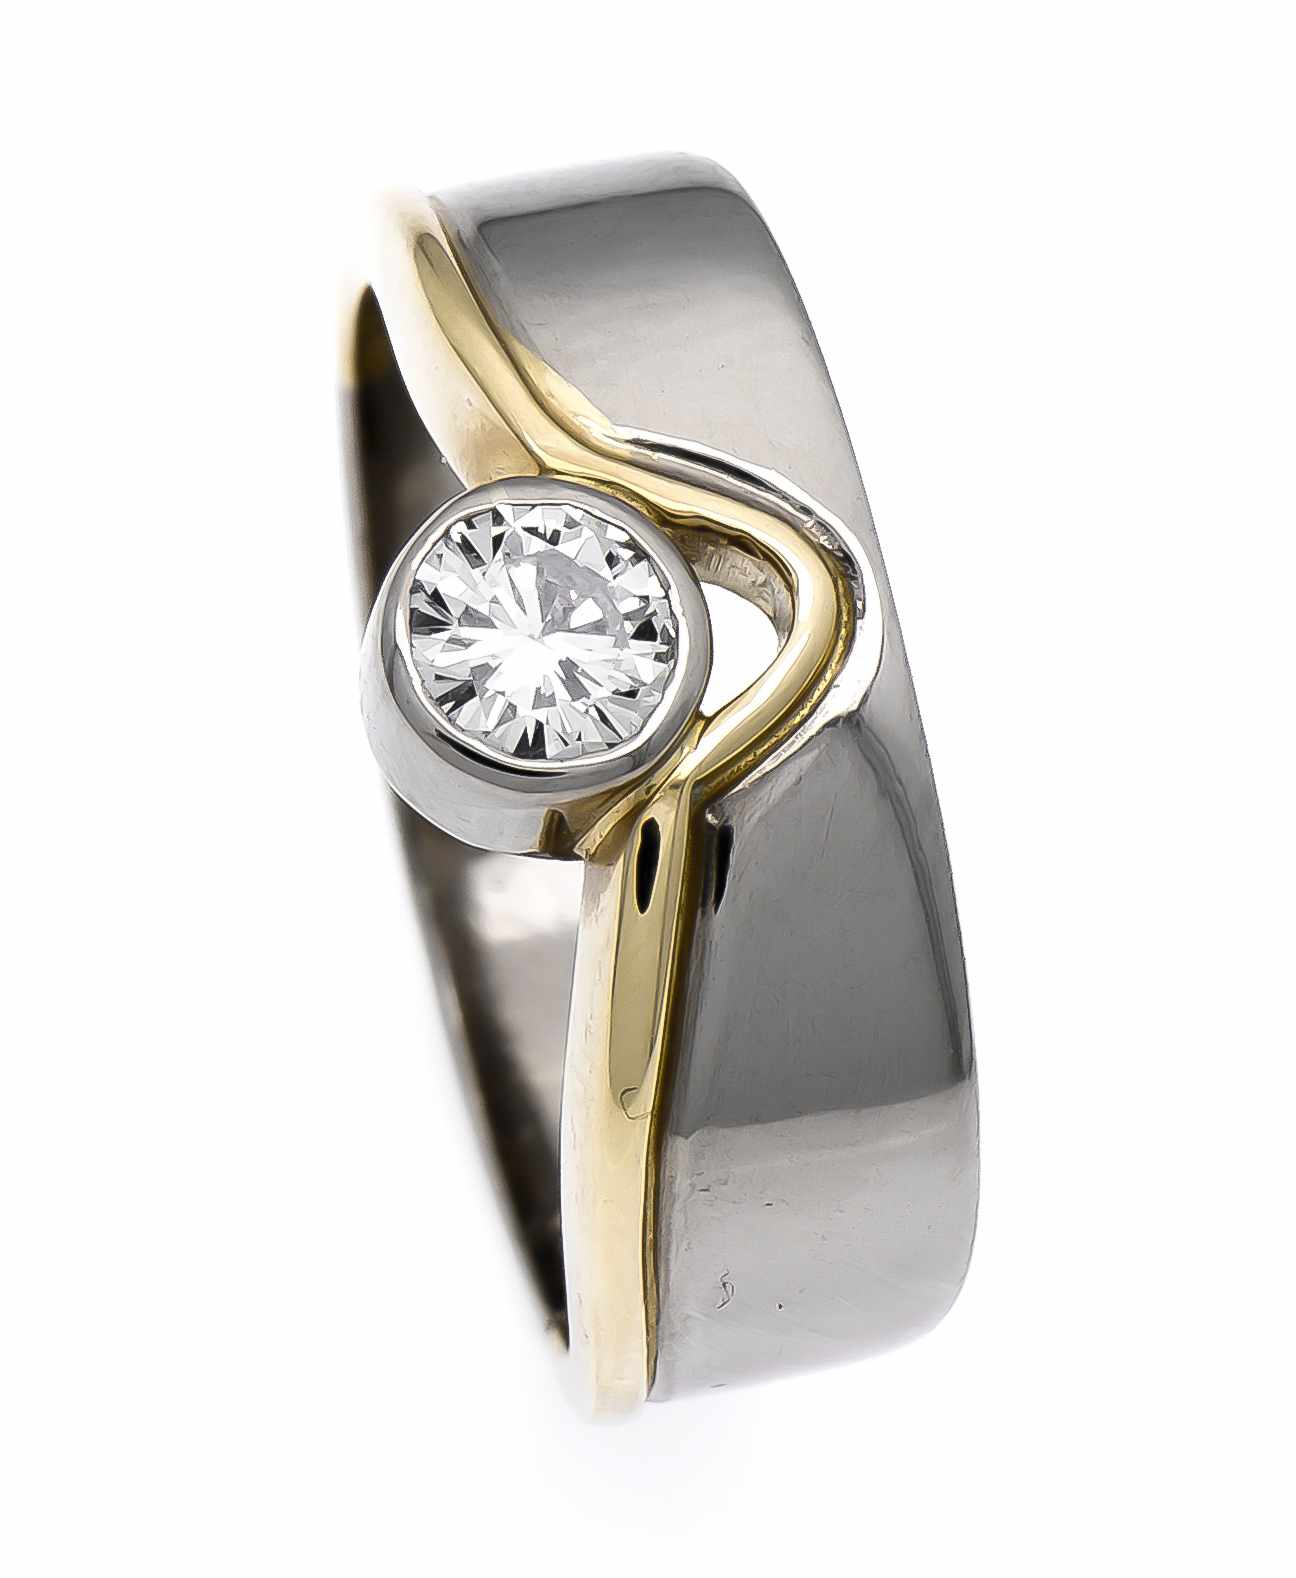 Brillant-Ring GG/WG 750/000 mit einem Brillanten 0,50 ct TW/lupenrein, RG 59, 8,5 g, Handarbeit